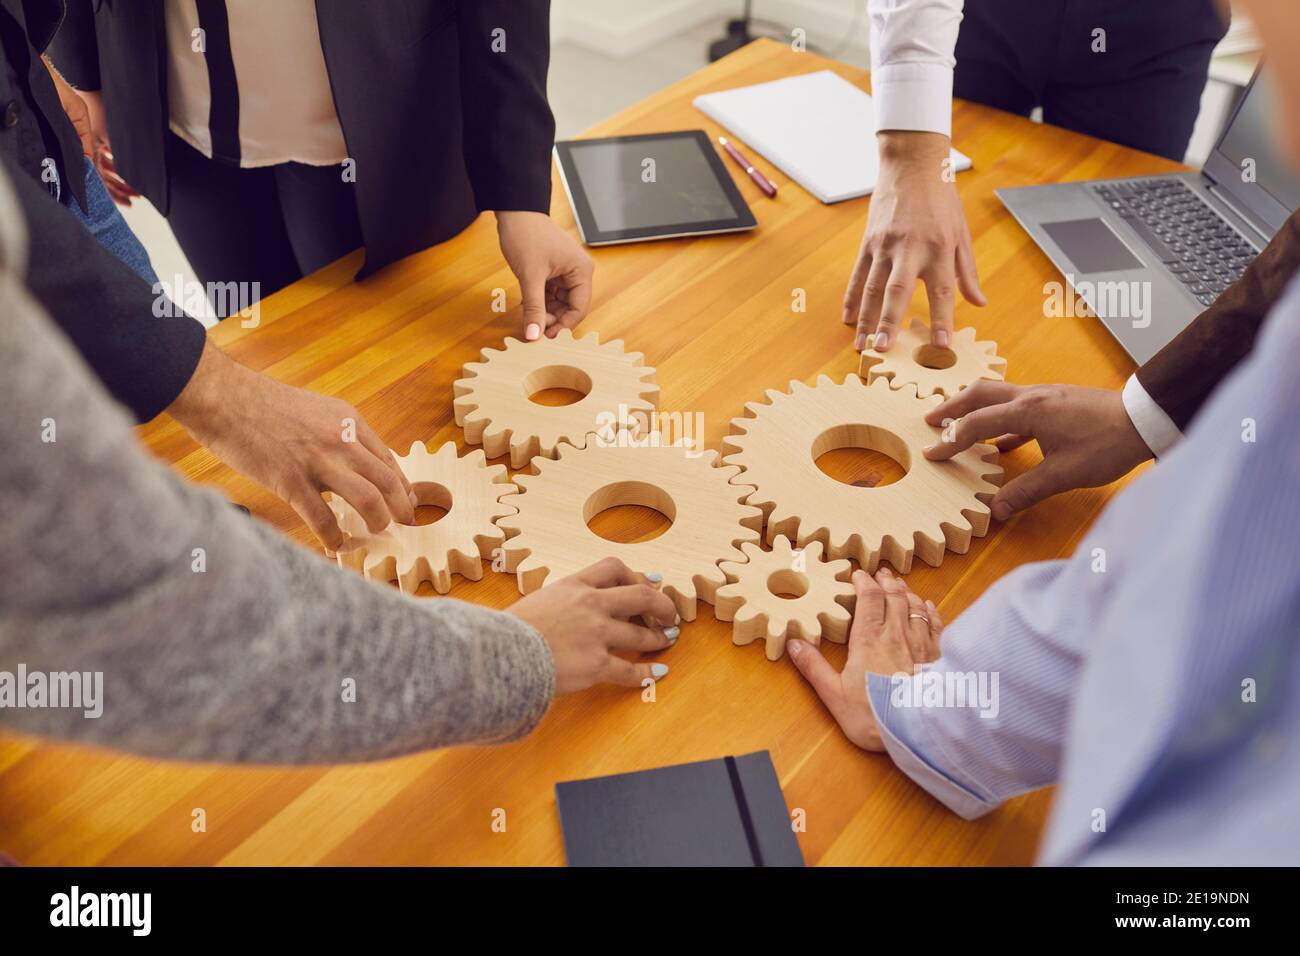 Les employés de l'entreprise qui se joignent aux roues dentées sont une métaphore pour un travail d'équipe efficace et trouver des solutions de travail Banque D'Images